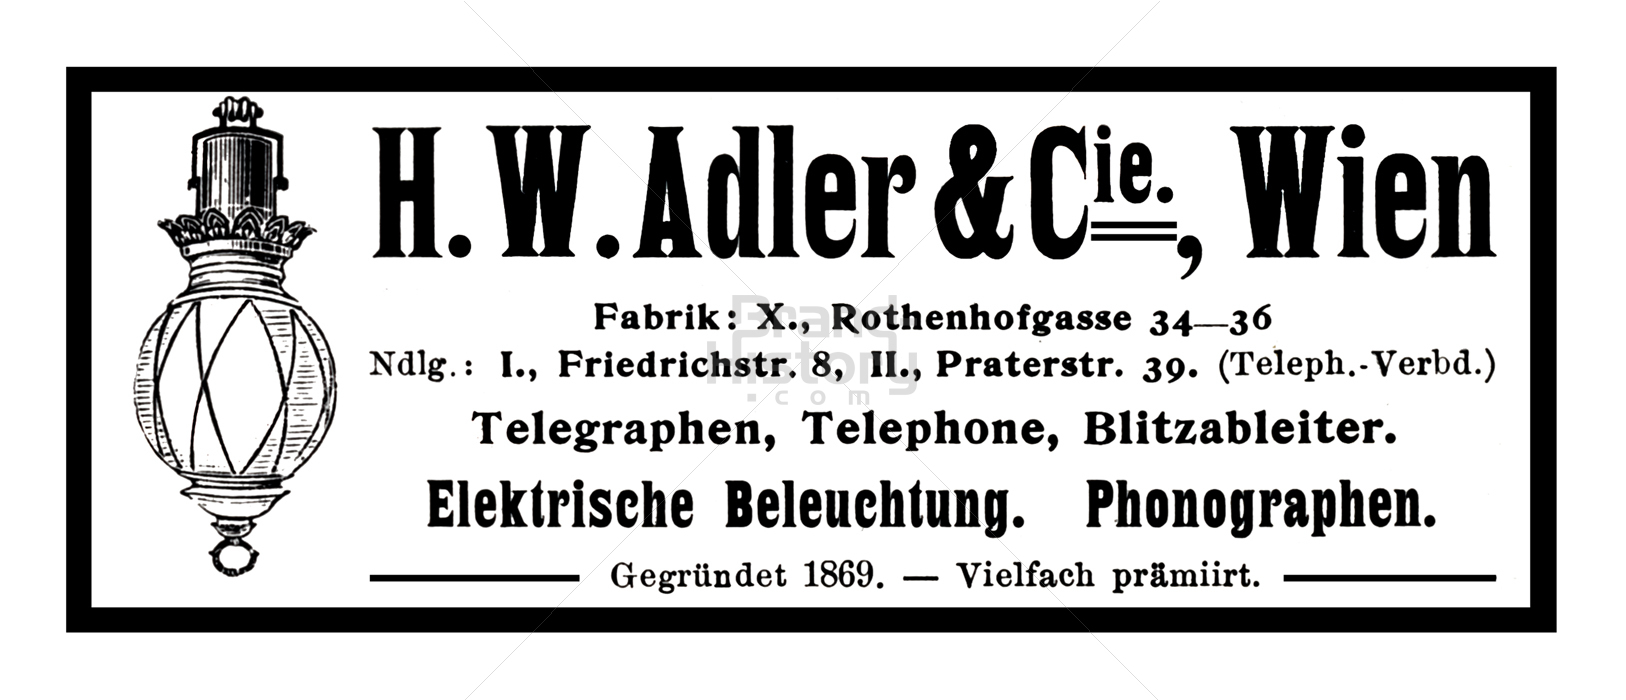 H. W. Adler & Cie., Wien